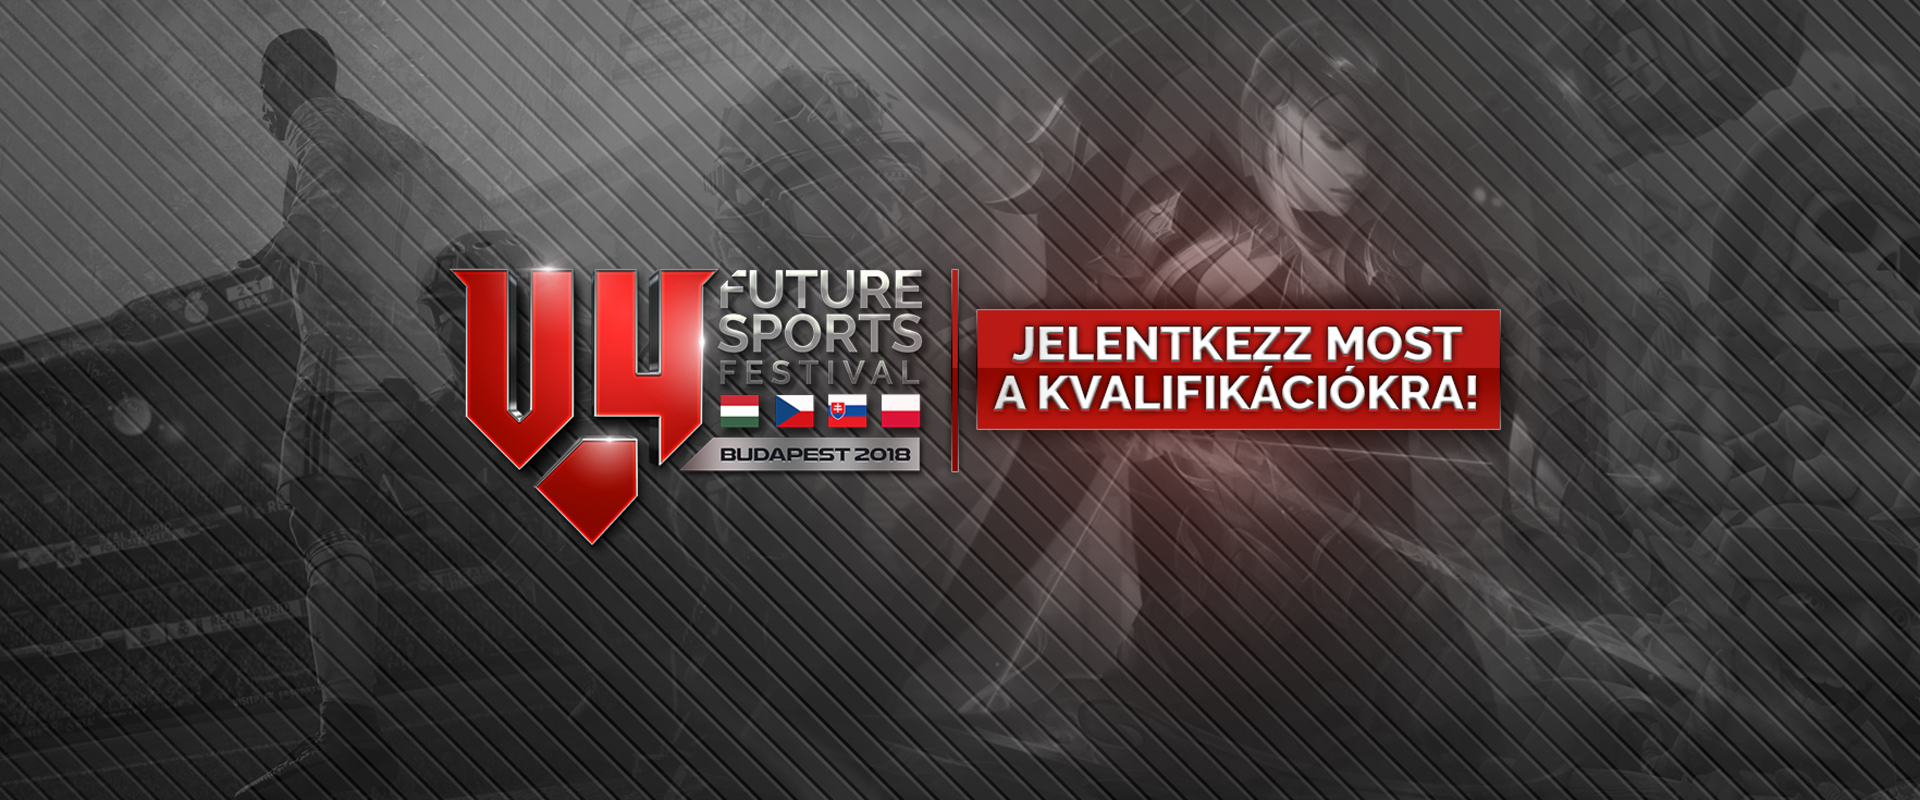 Már csak három napig jelentkezhettek a félmillió euró összdíjazású V4 Future Sports Festival CS:GO selejtezőre